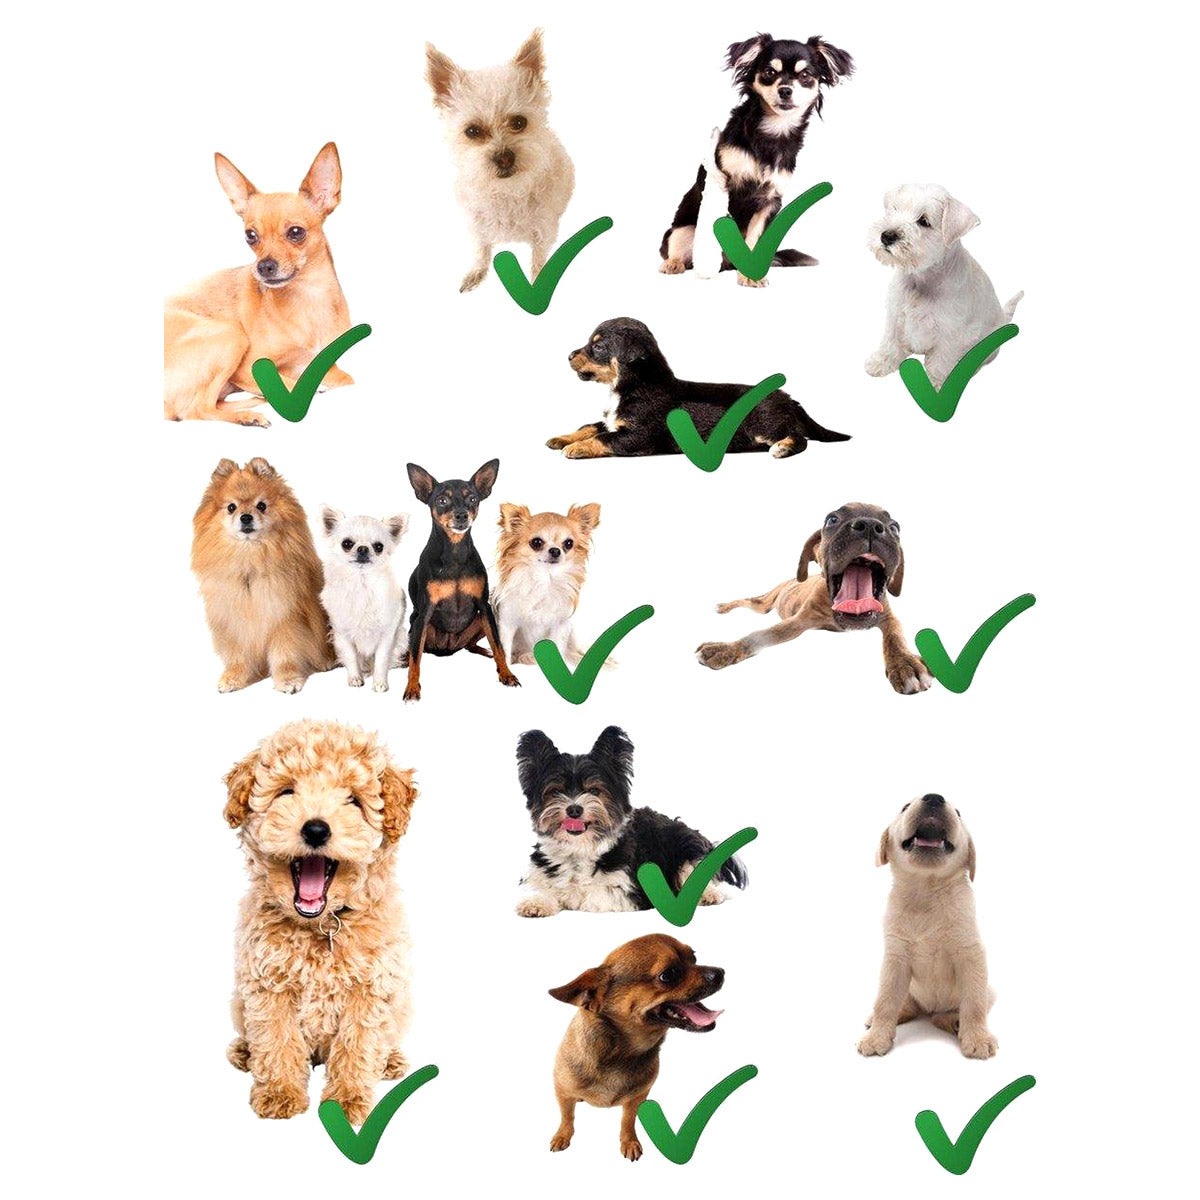 Ariko Autostoel Hond / Kat / Puppy - Opvouwbaar Waterbestendig Honden / Kat zitje - Dieren zitje voor in de auto - Hondenmand - 40 x 40 x 25 cm - Incl Opvouwbaar voerbakje en borstel - Veiligheidsband - Schone auto